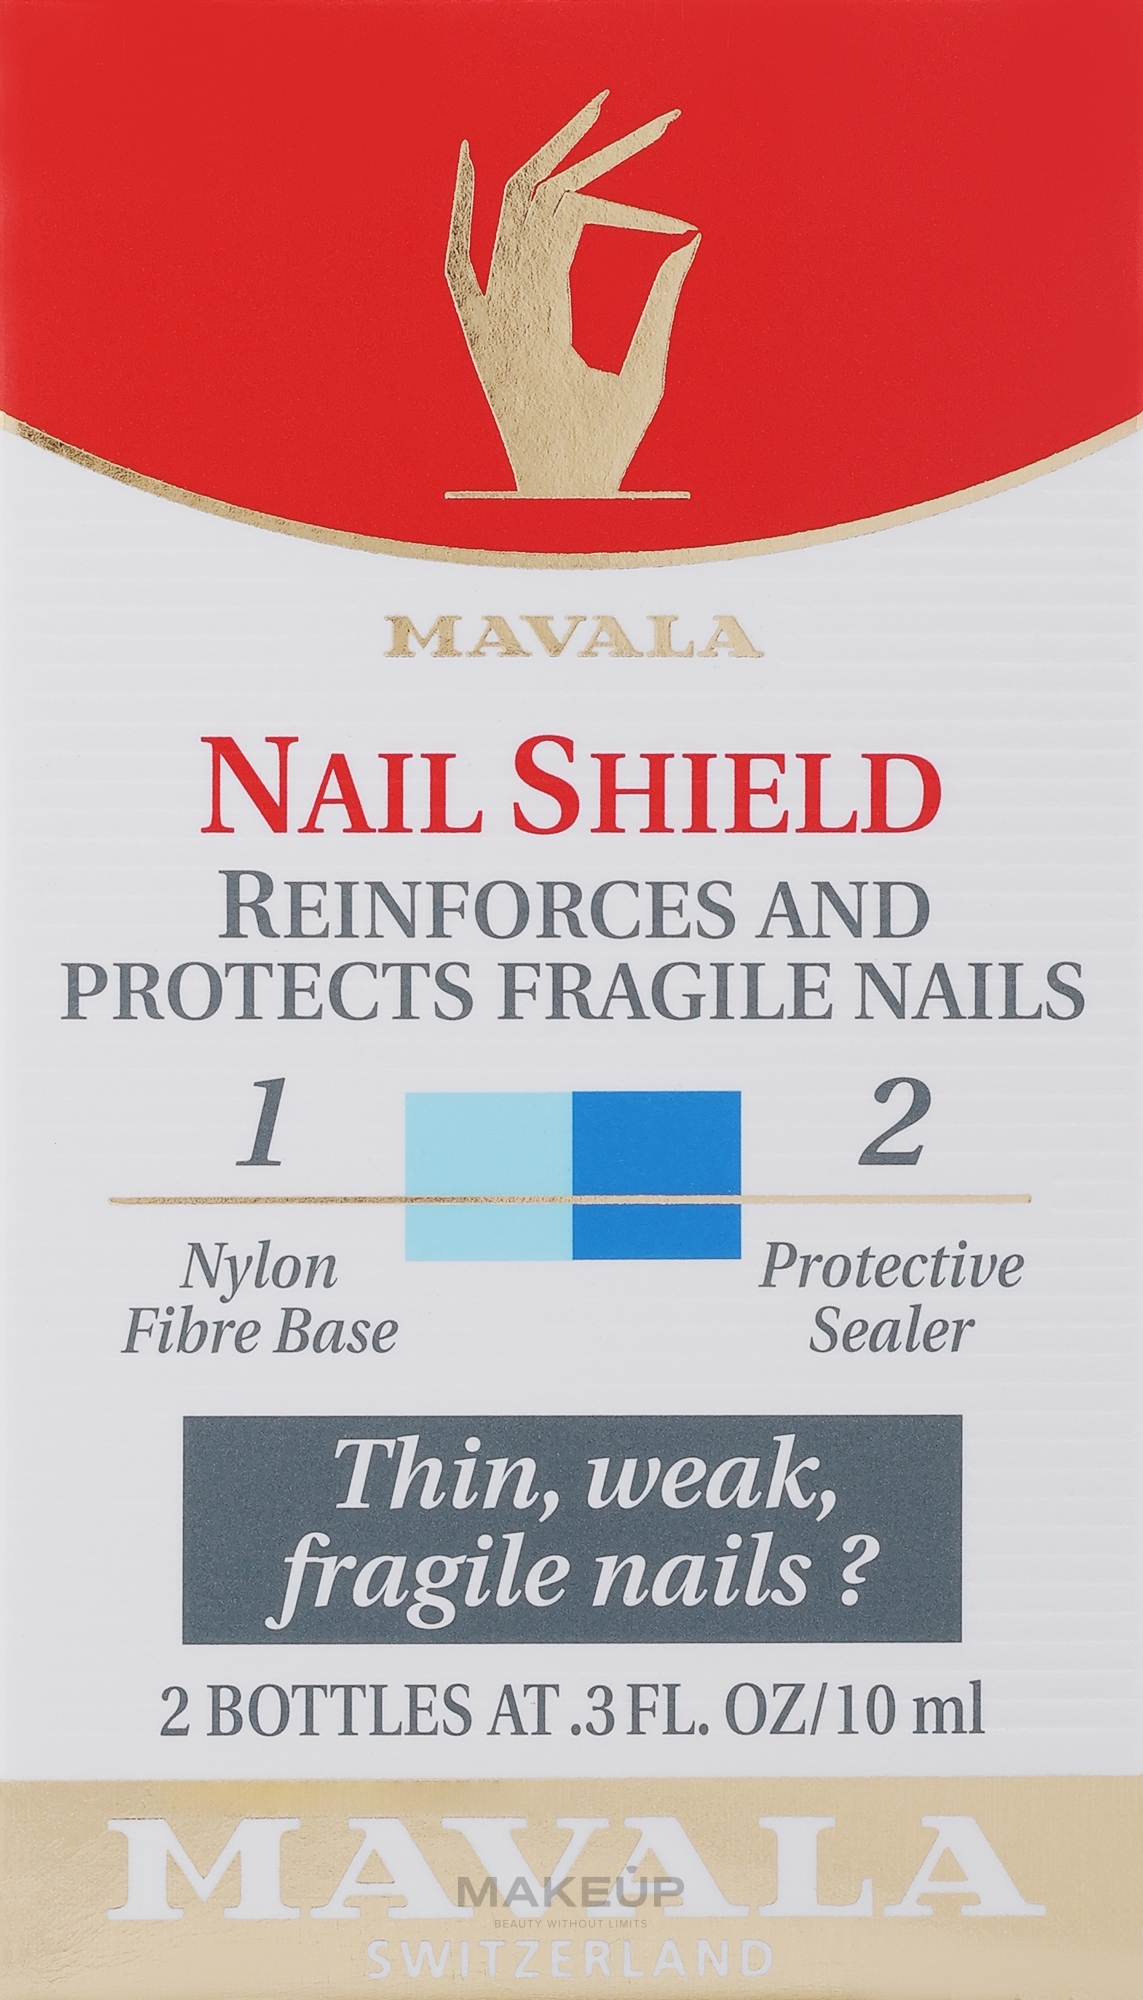 Захисний екран для нігтів - Mavala Nail Shield — фото 2x10ml